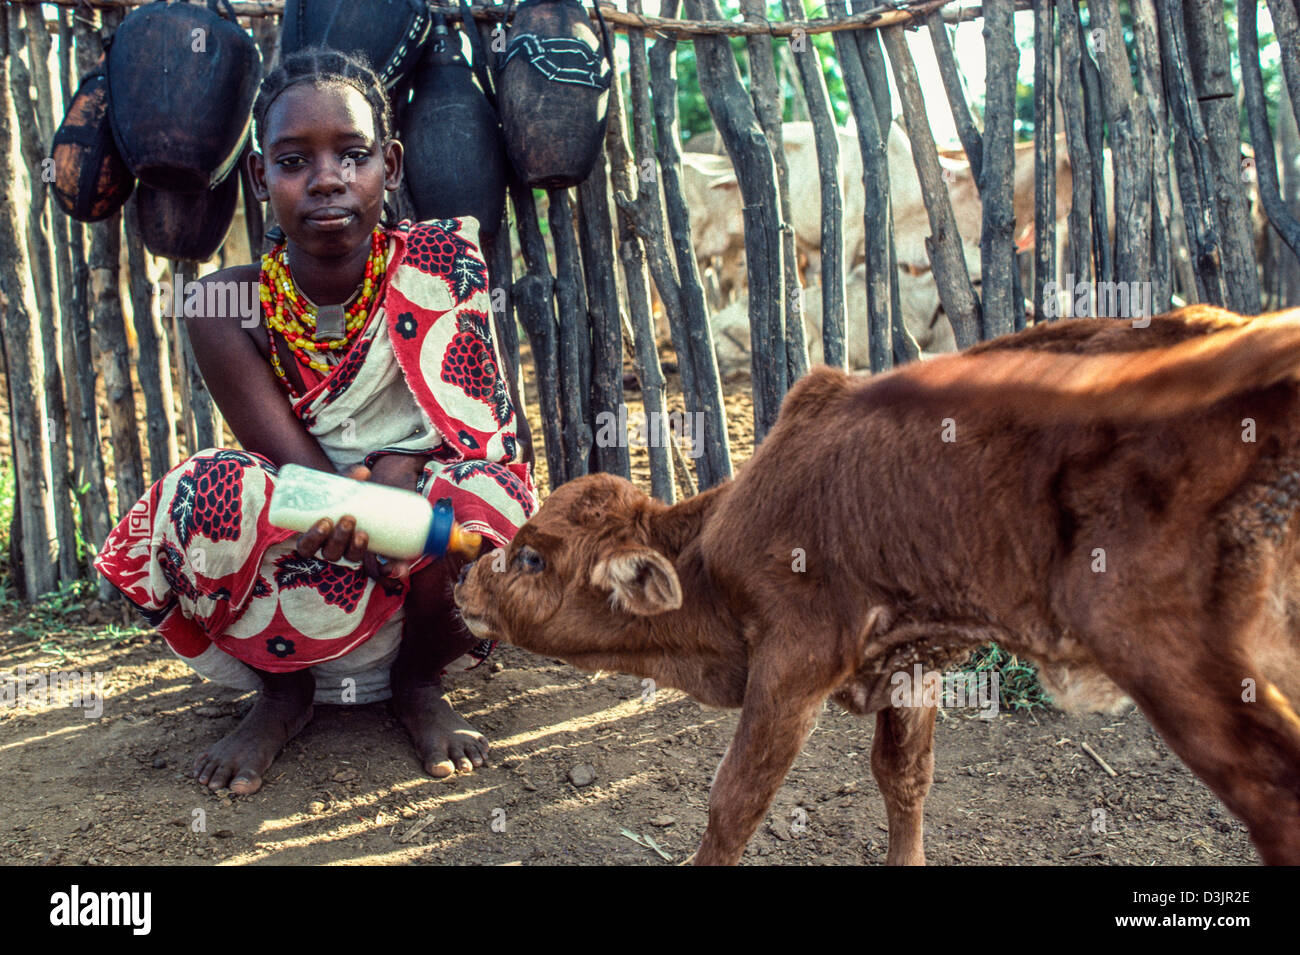 Jeune fille d'Oromo dans la robe traditionnelle colorée qui s'accroupisse tout en nourrissant le lait à la main à un jeune veau malade. Près de Wajir, Kenya Banque D'Images